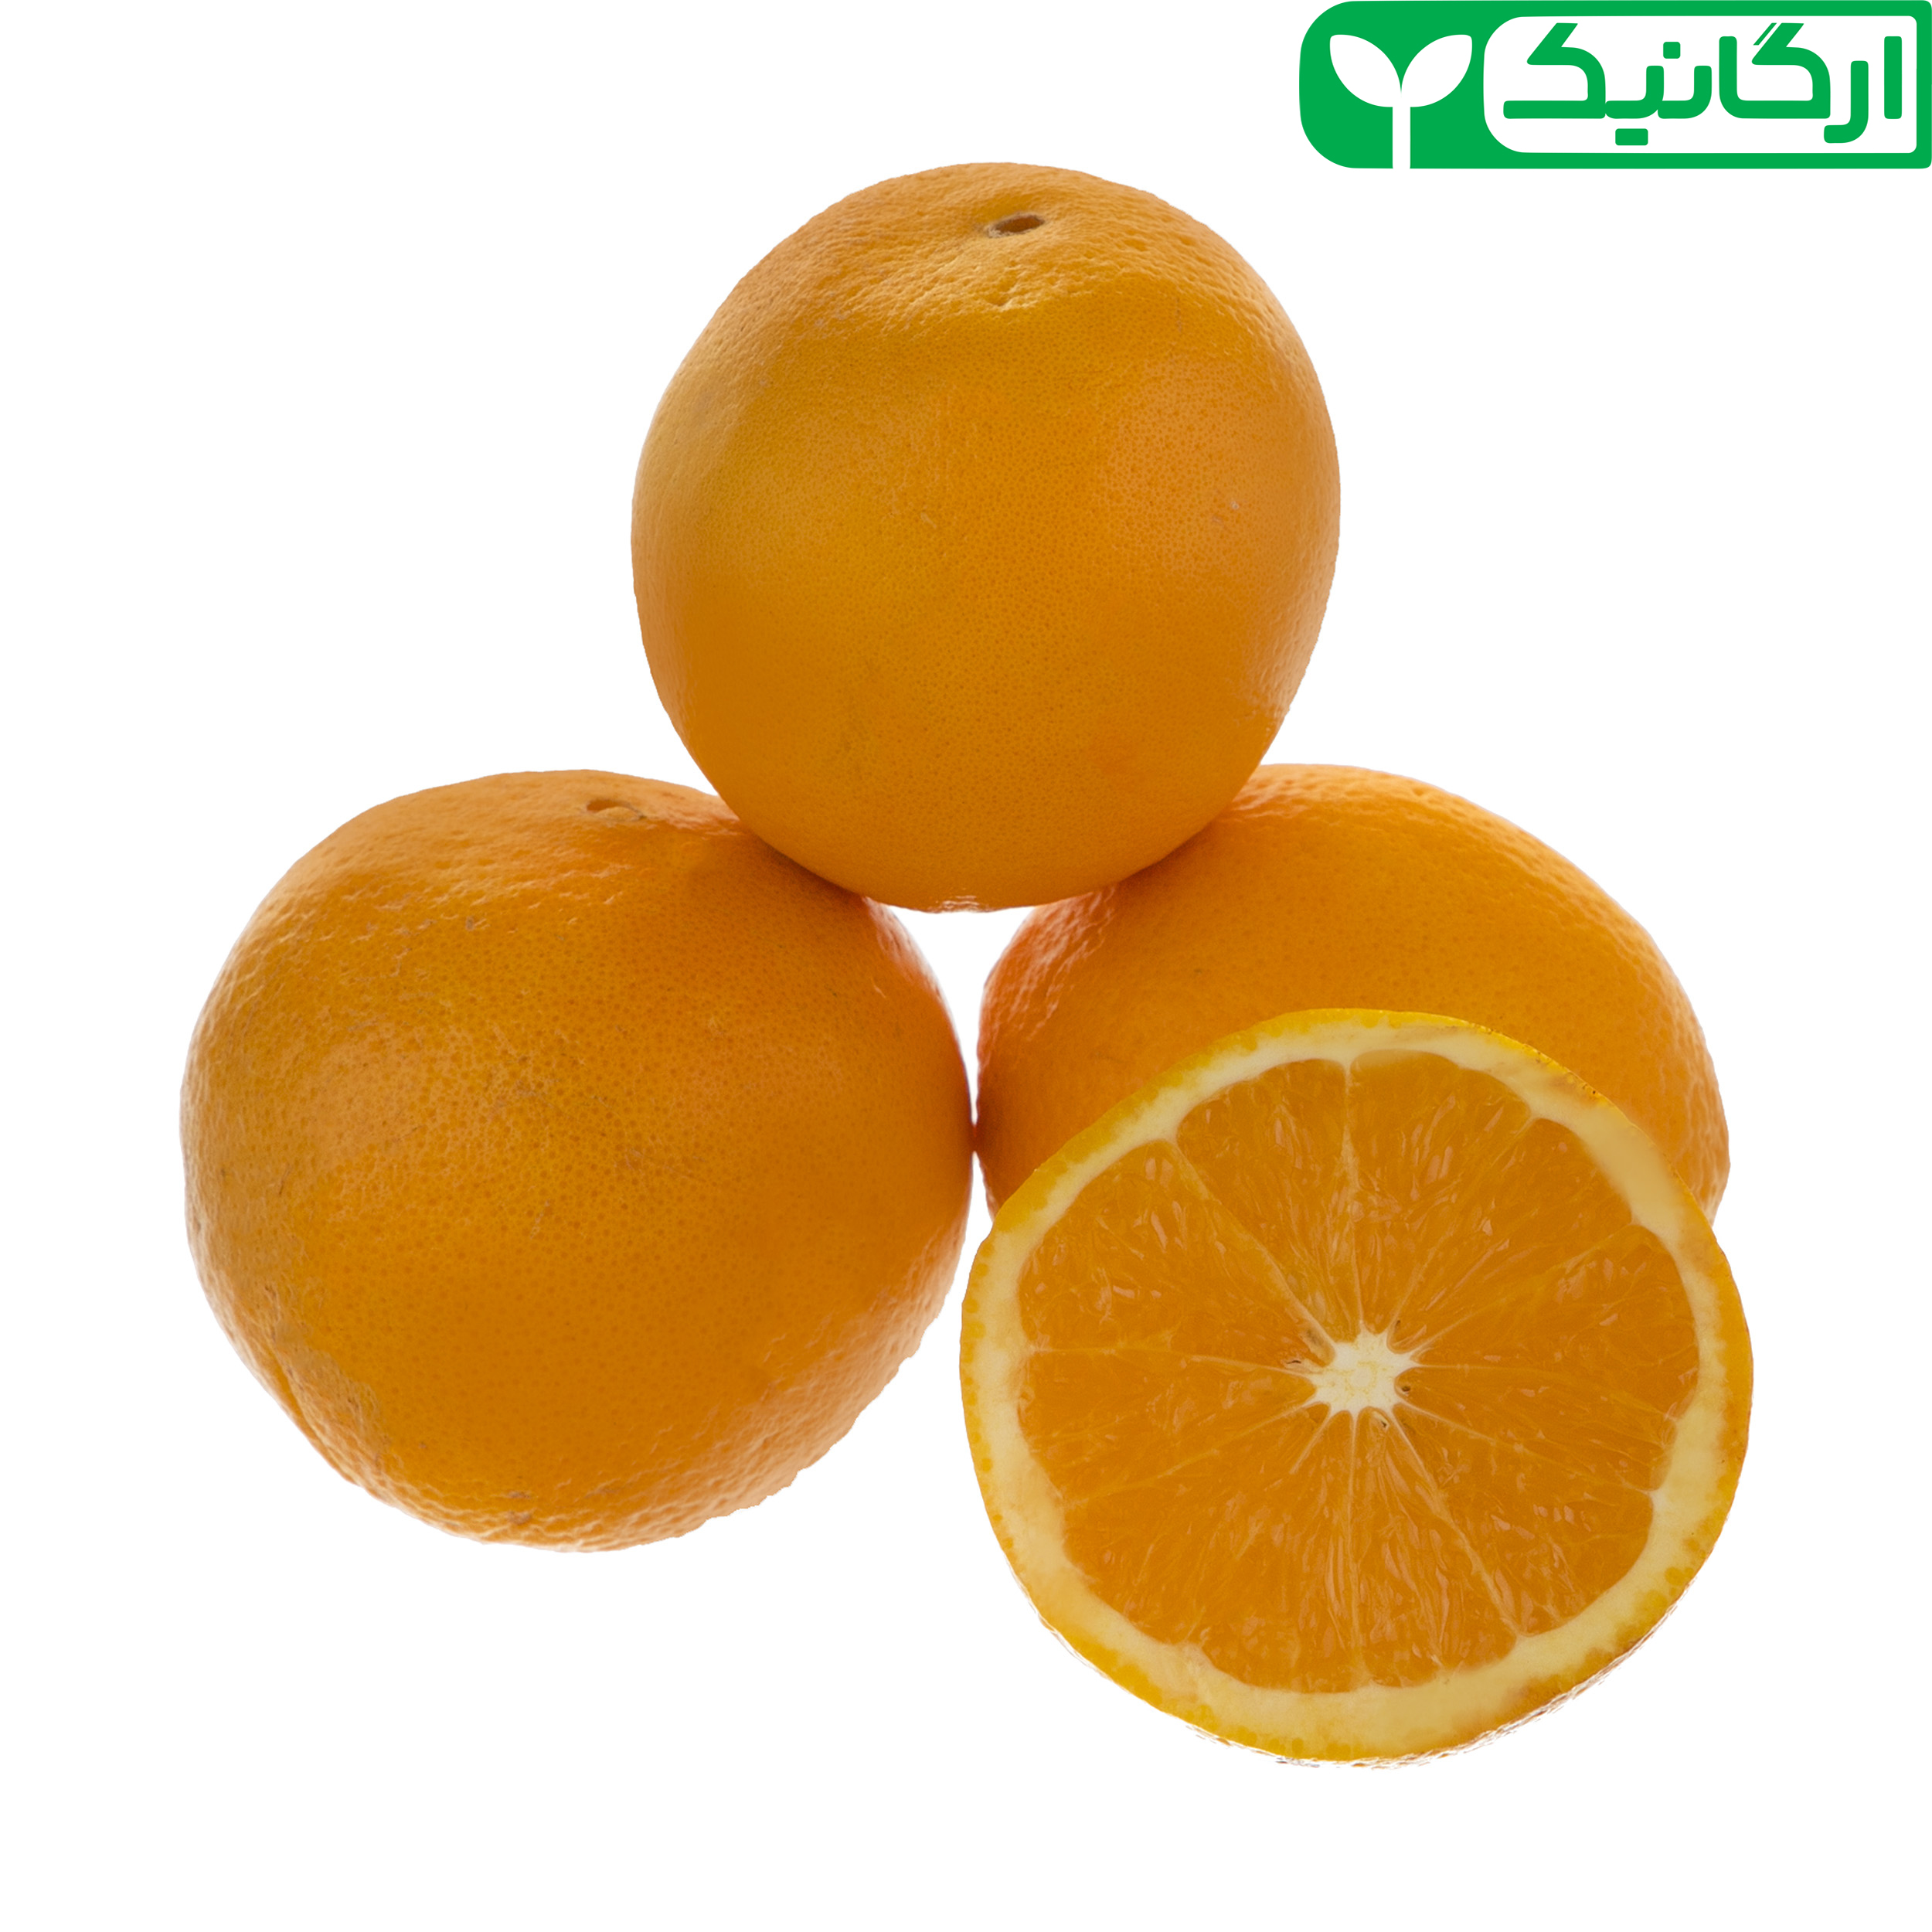 پرتقال ارگانیک رضوانی - 1 کیلوگرم